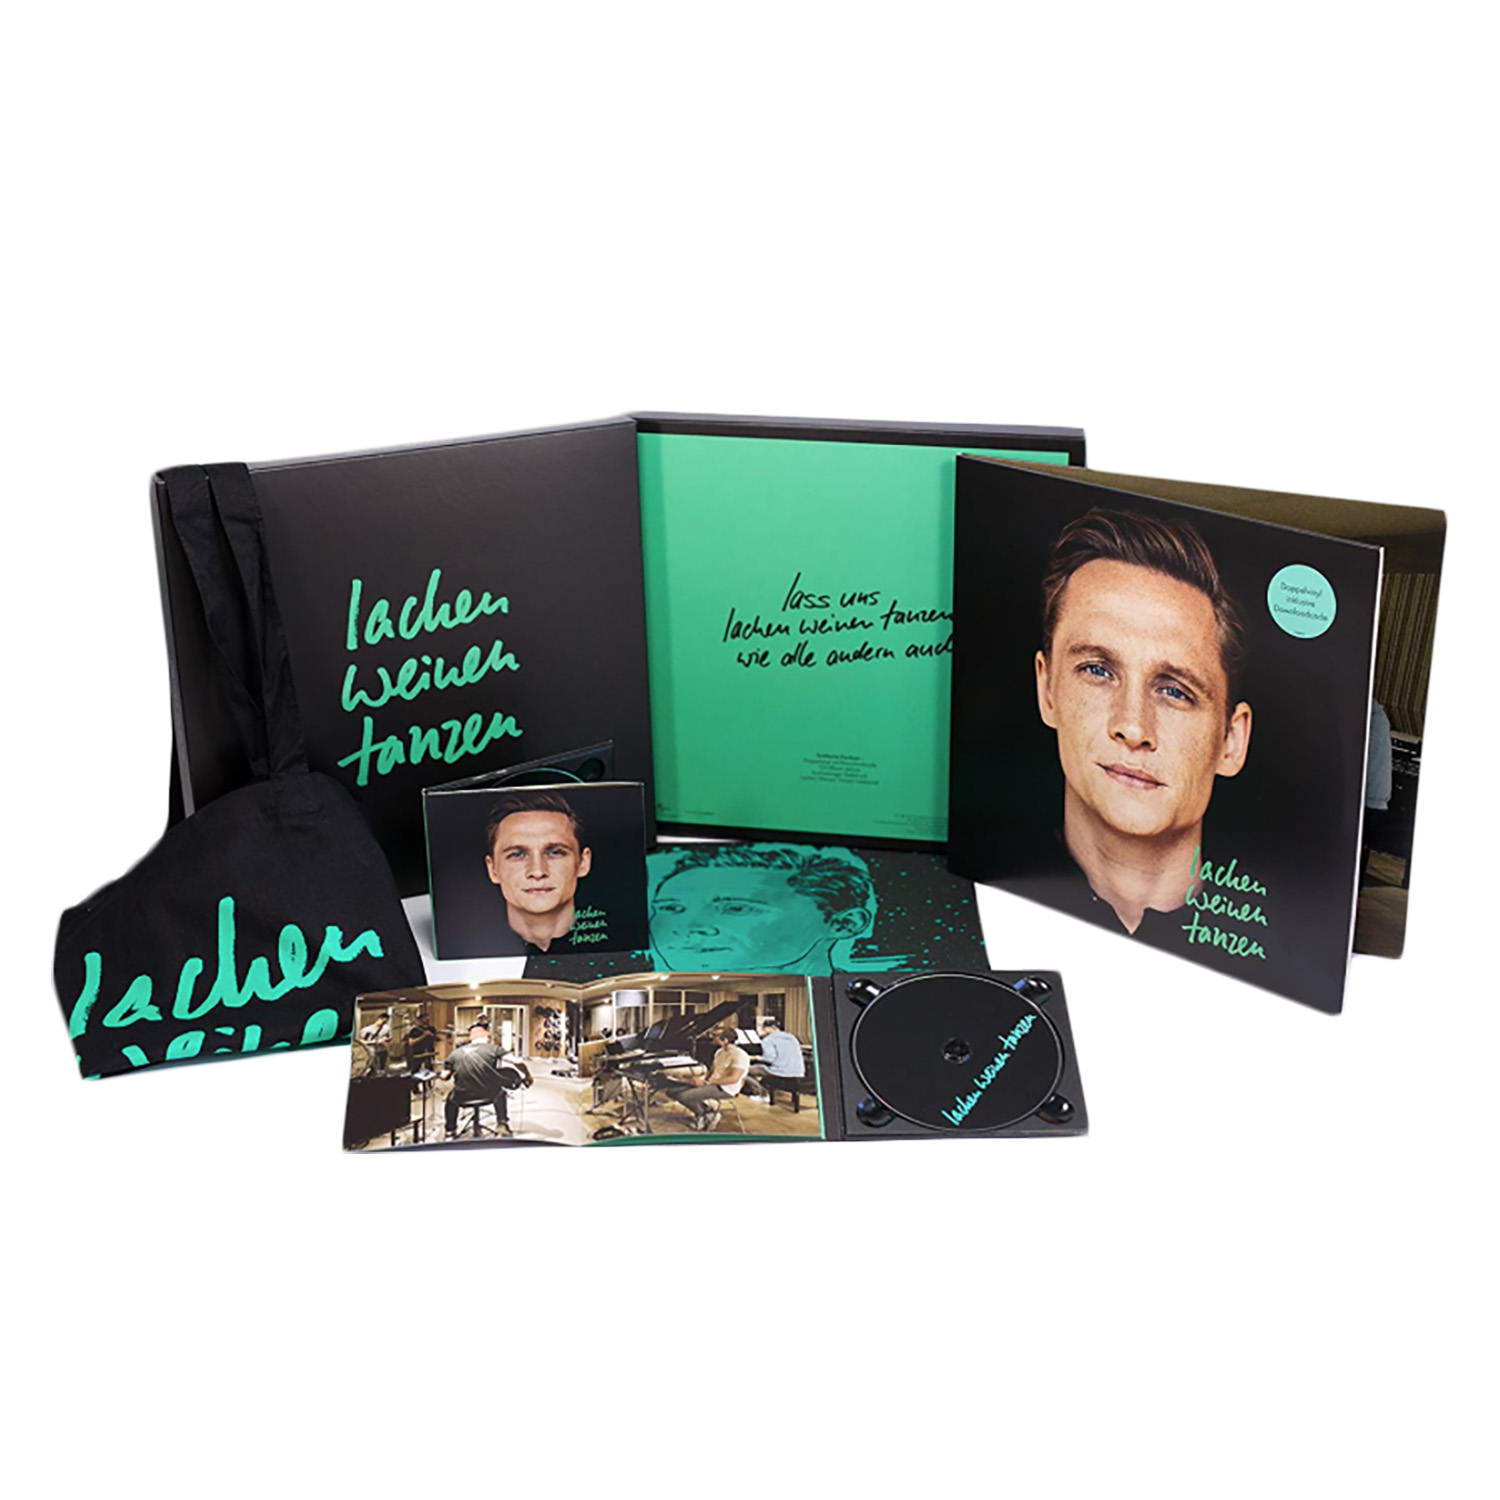 Schweighöfer Lachen Weinen Tanzen Limited Fanbox LP Premium-Doppel-CD, Doppel-LP, Siebdruck, Jutebeutel